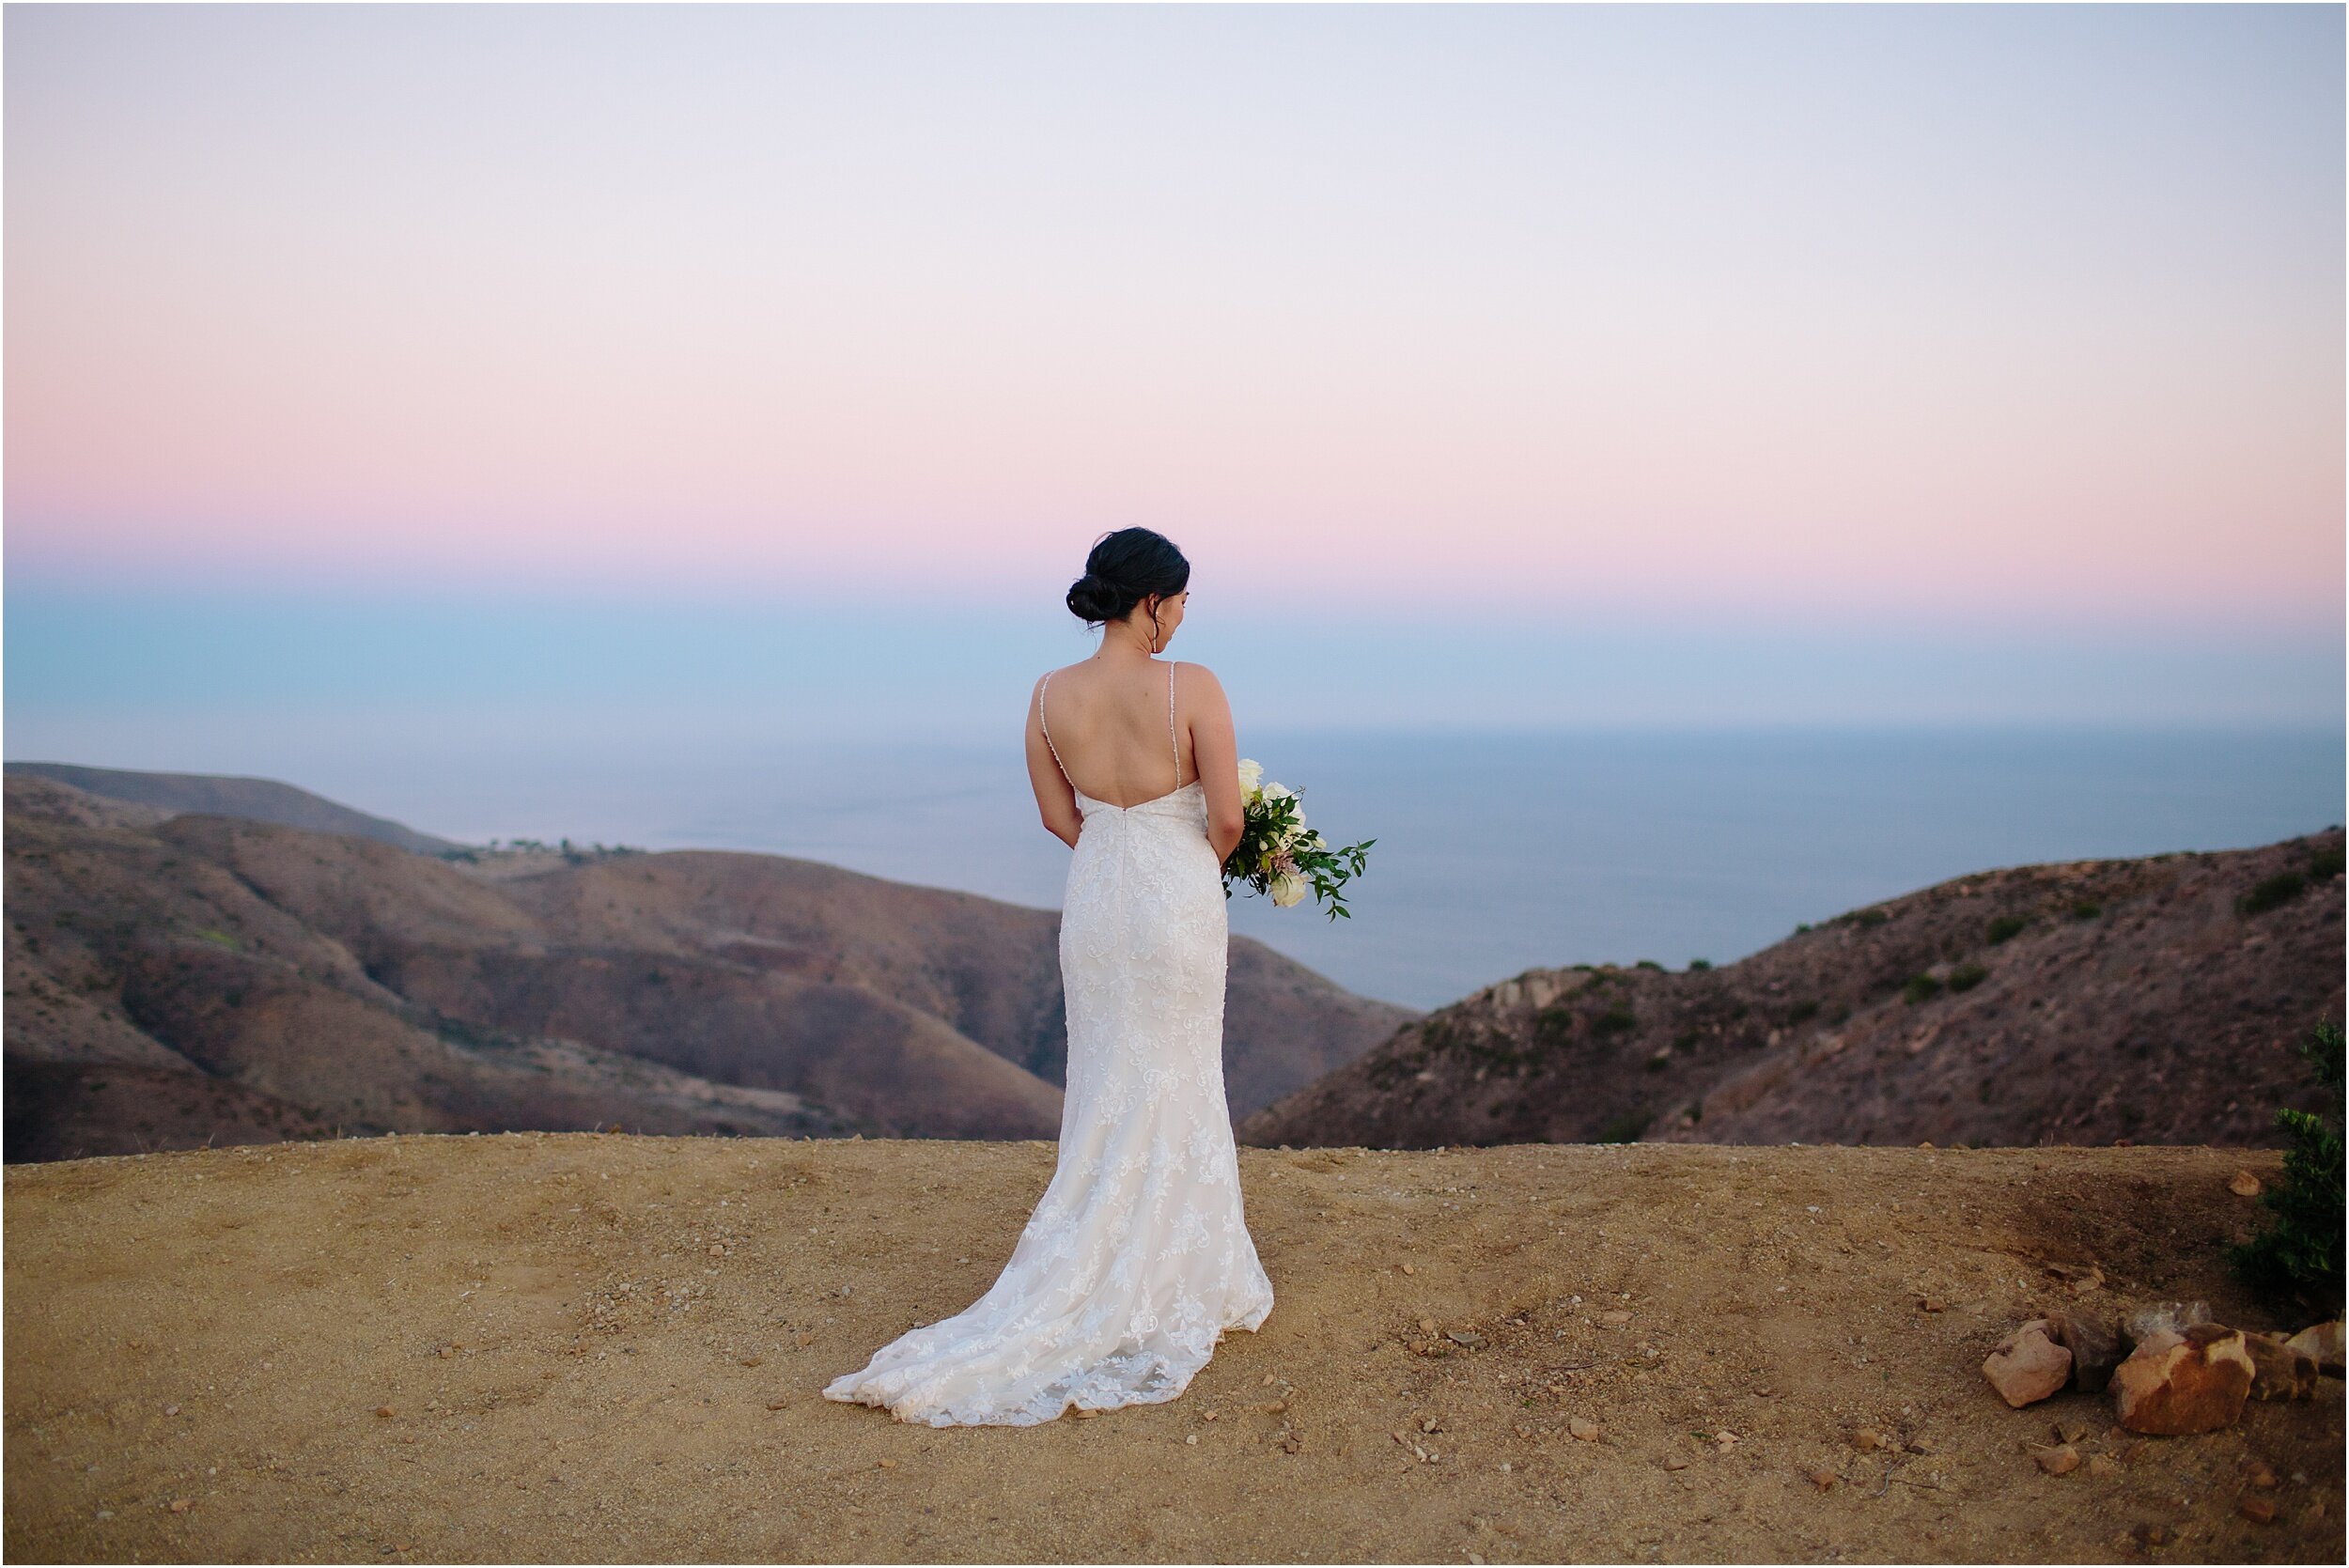 Amy and Jeff | Small Malibu Wedding | Malibu Elopement Photographer_0058.jpg